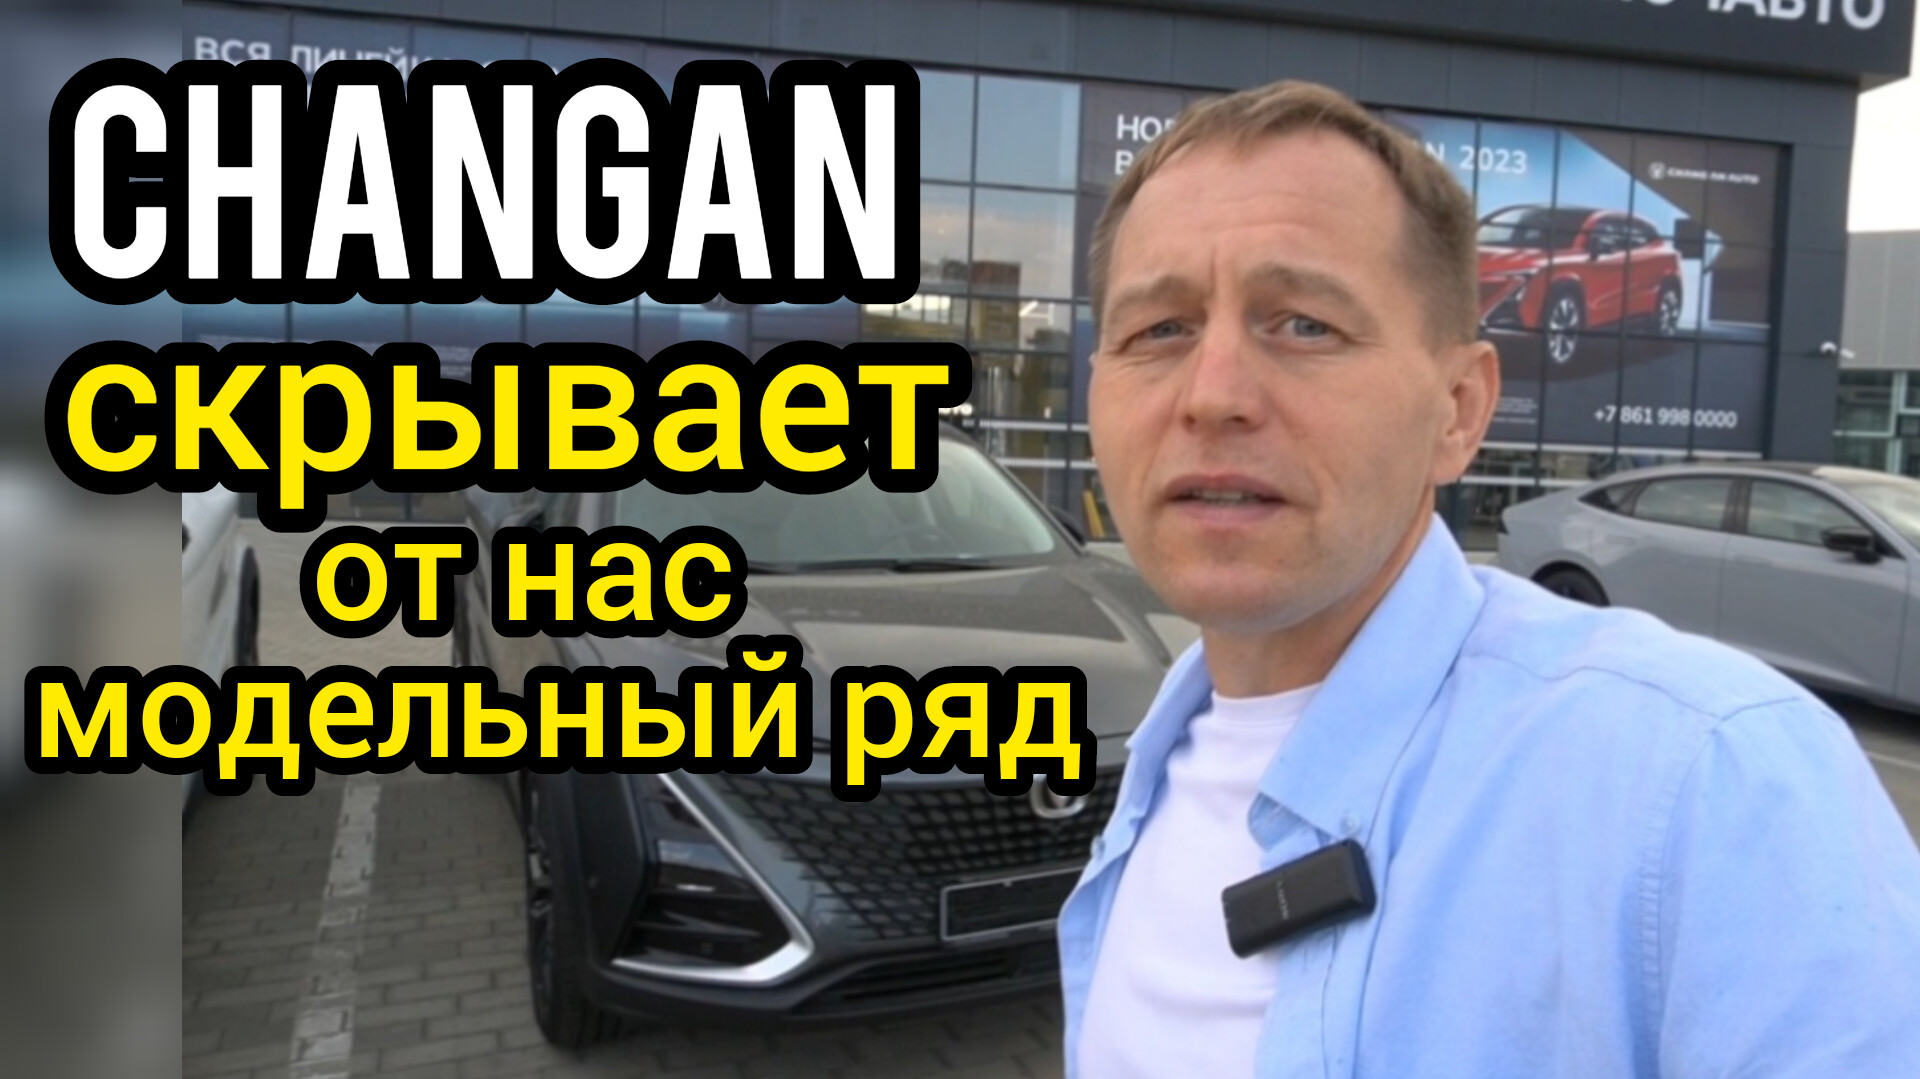 Вот, что скрывает "Changan" от российских потребителей. Автомобиль, которого нет на официальном сайт